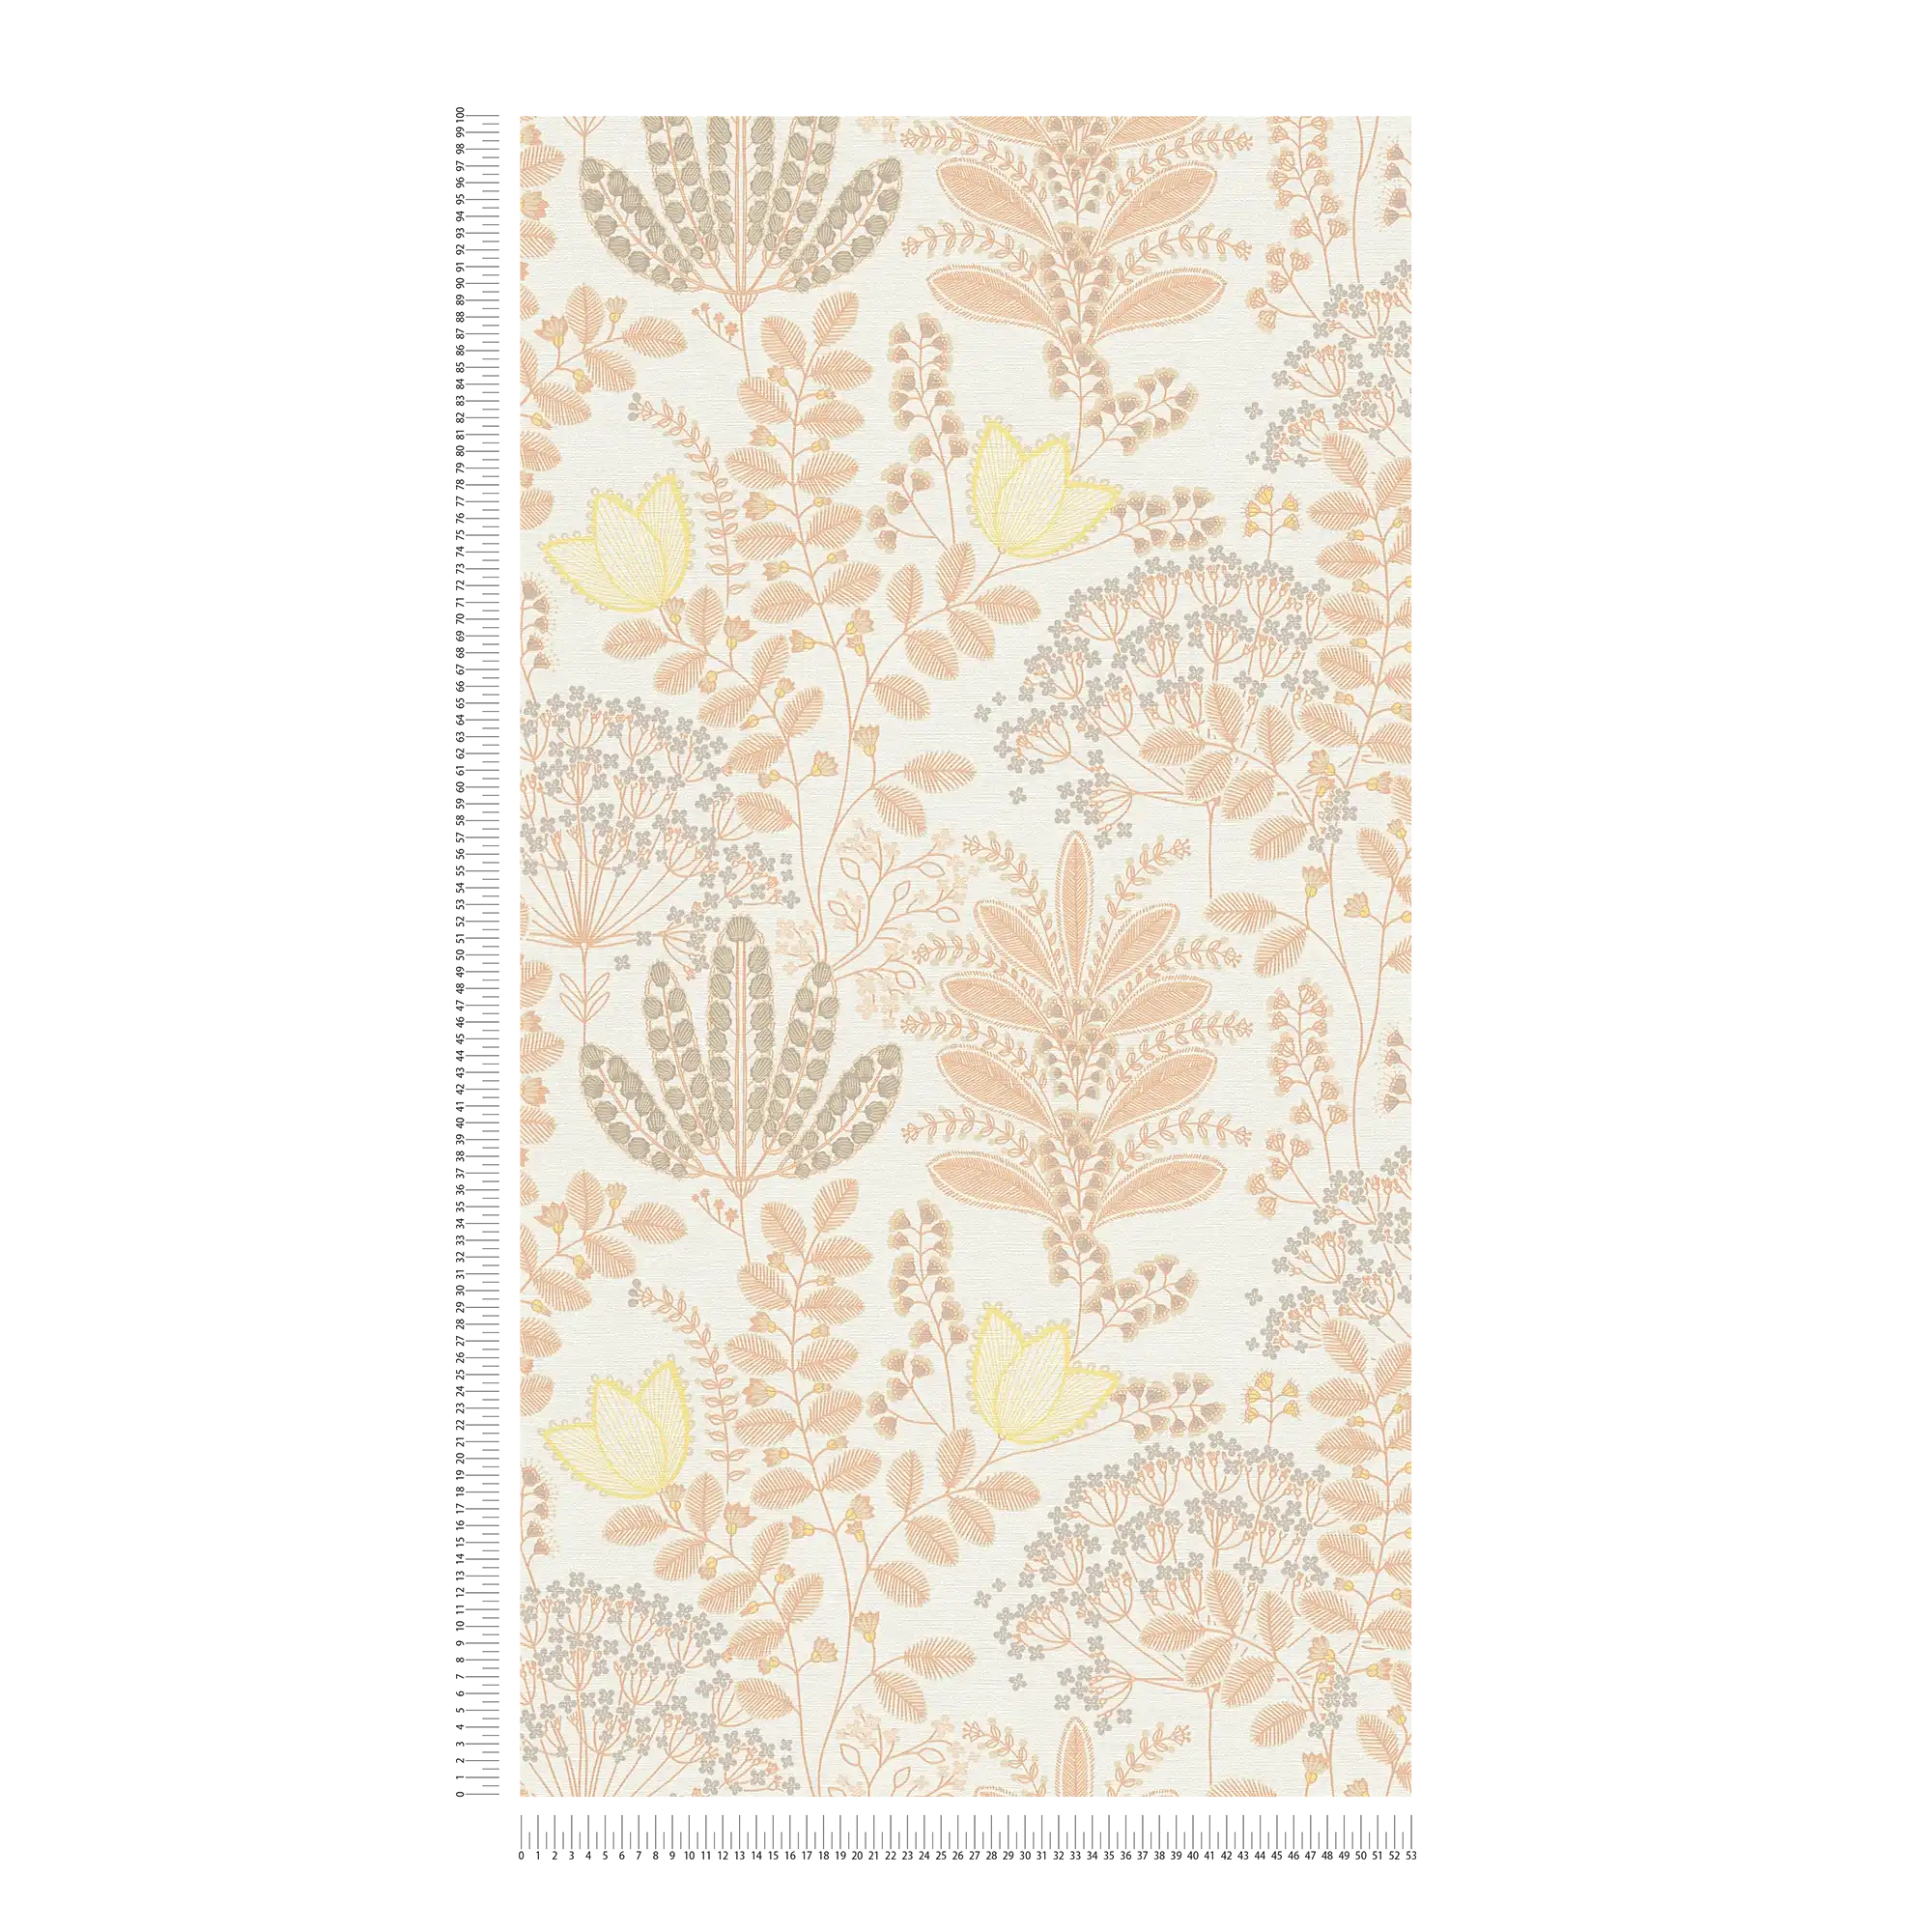             papier peint en papier floral avec des feuilles de style rétro légèrement structuré, mat - blanc, orange, jaune
        